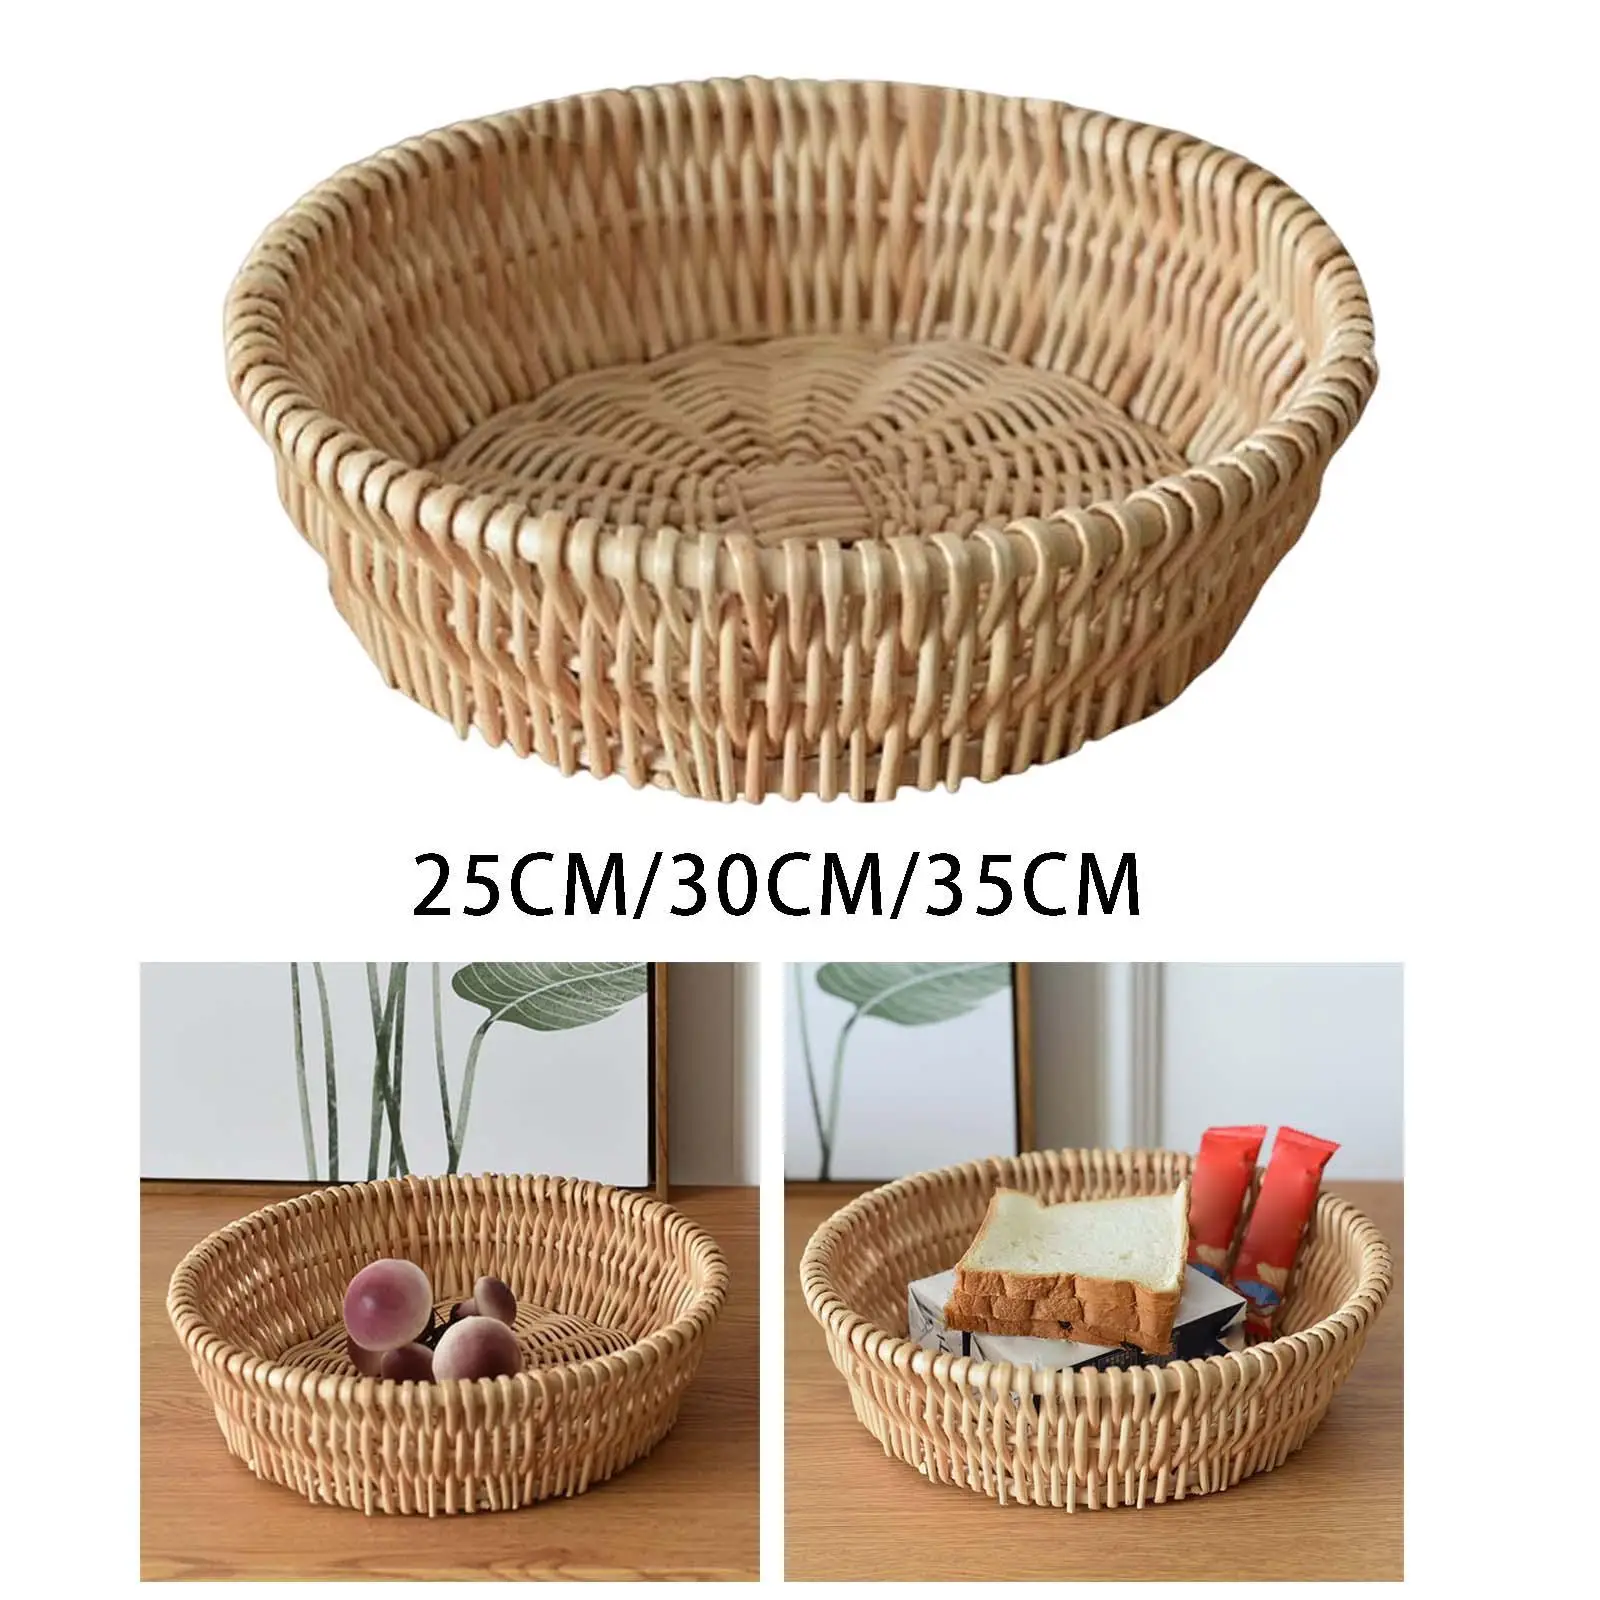 Hand Woven Fruit Storage Basket Wicker Bread Basket Container Bread Basket Vegetable Basket for Kitchen Hotel Shelf Decoration